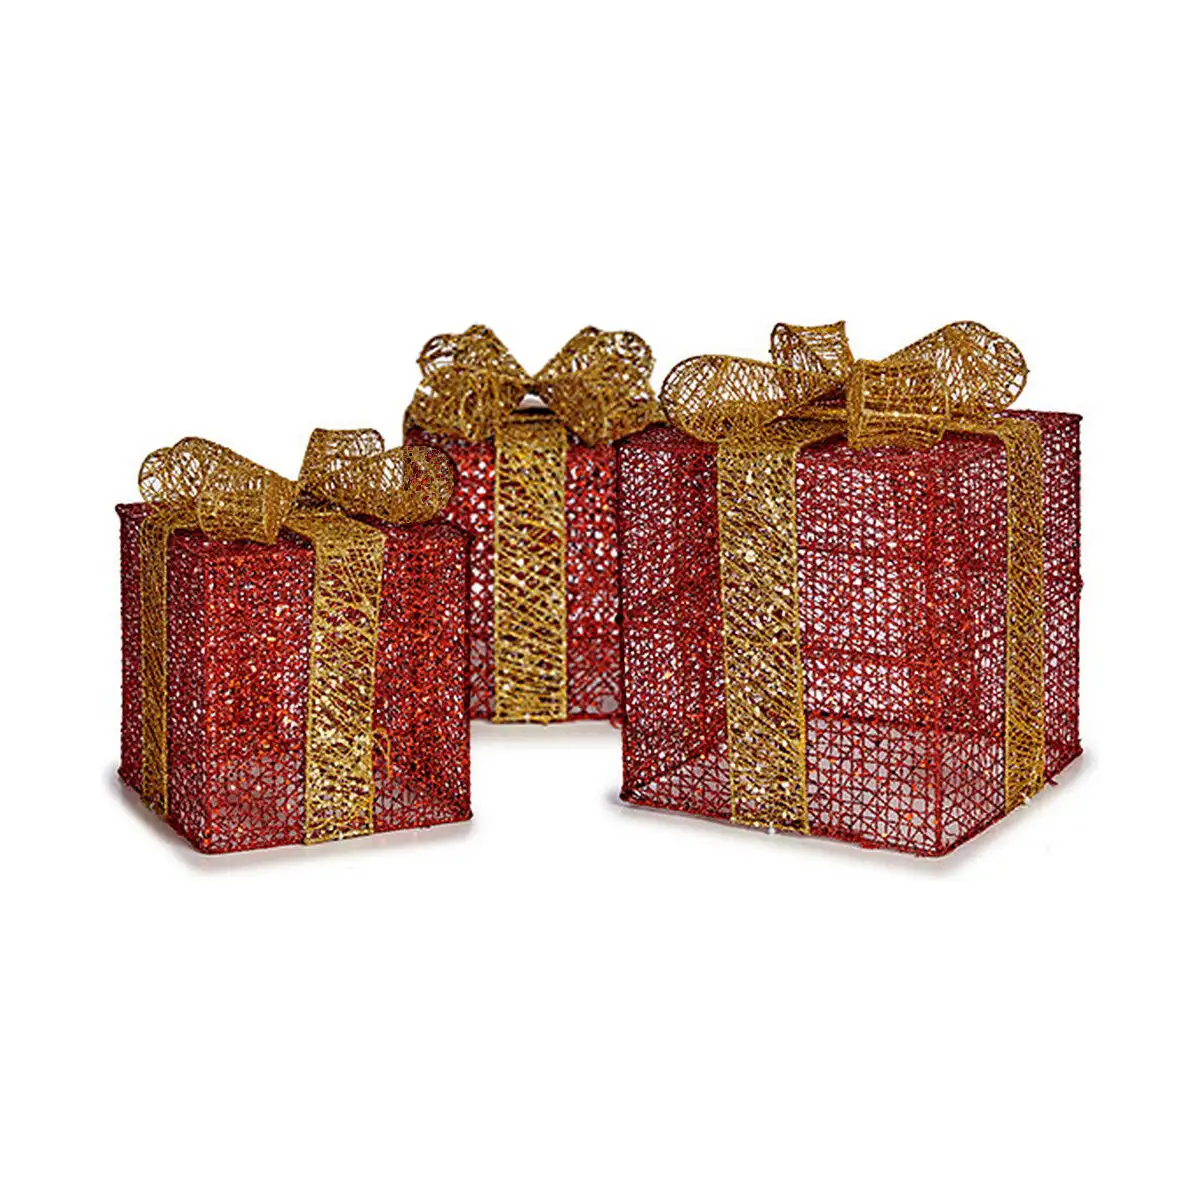 Ensemble decorations de noel rouge metal boite cadeau dore_4756. DIAYTAR SENEGAL - L'Artisanat à Portée de Clic. Découvrez notre boutique en ligne pour trouver des produits uniques qui célèbrent la créativité et l'artisanat sénégalais.